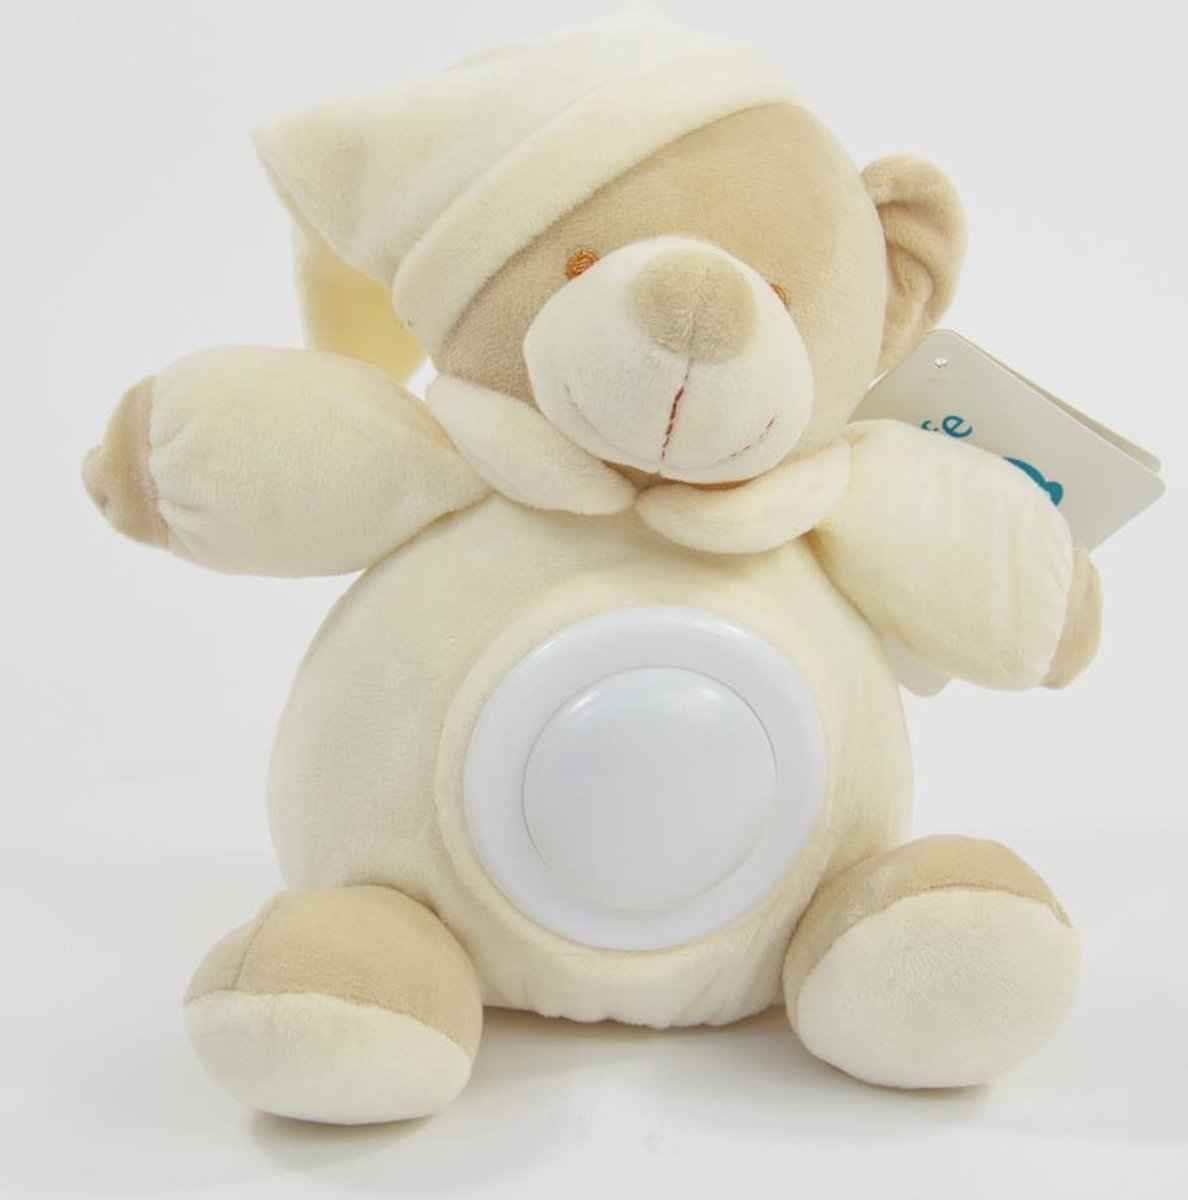 peluche ours - veilleuse enfants - LED - batterie - multicolore